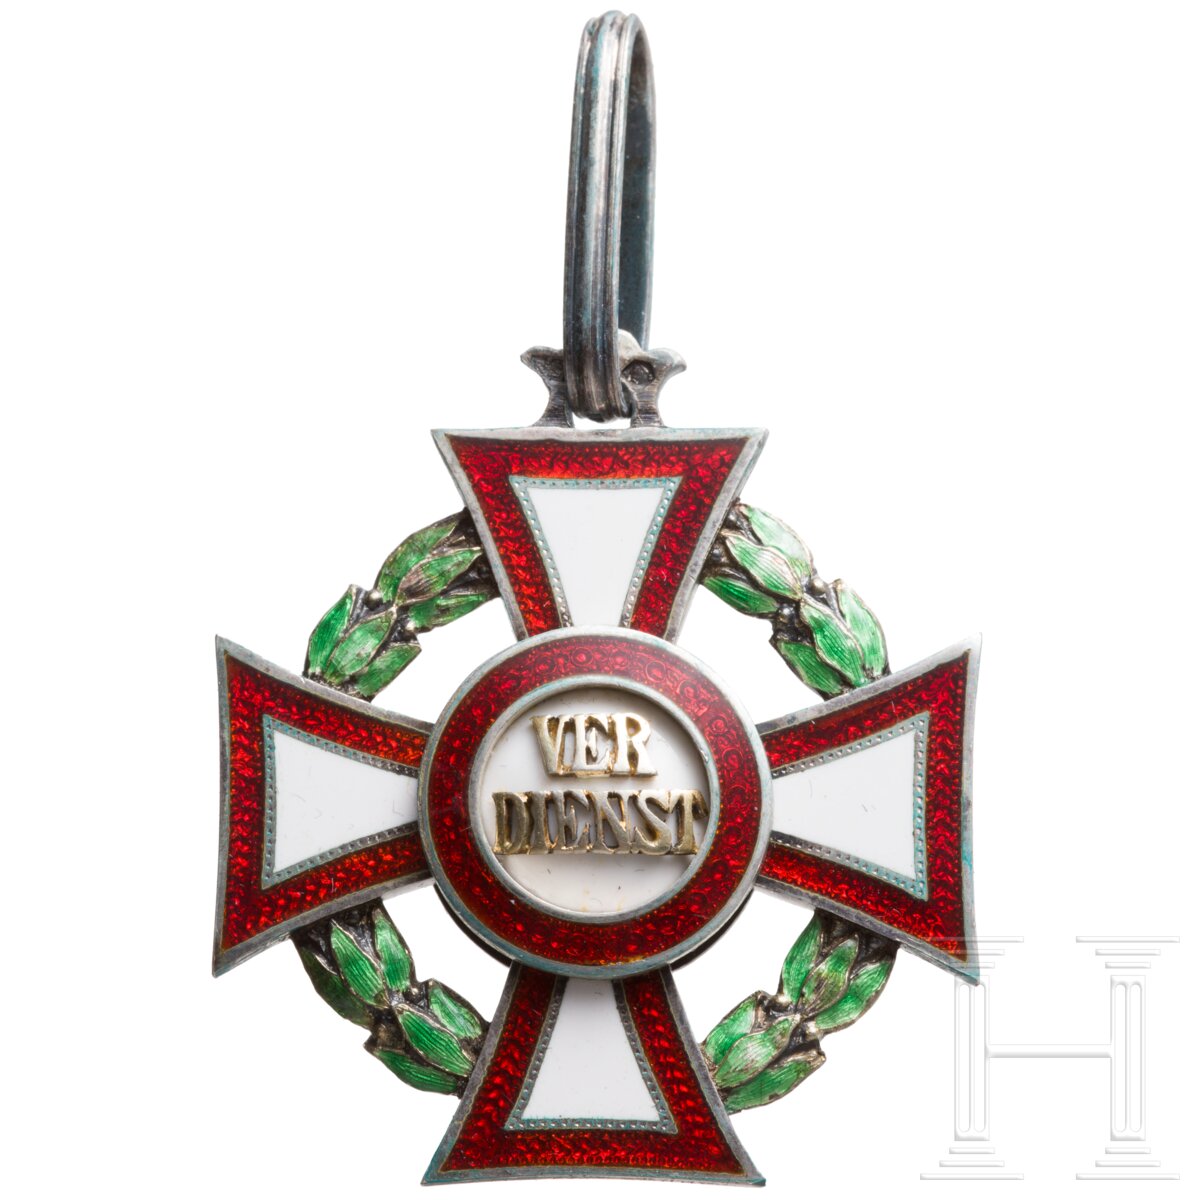 Militärverdienstkreuz 2. Klasse mit Kriegsdekoration - Image 2 of 4